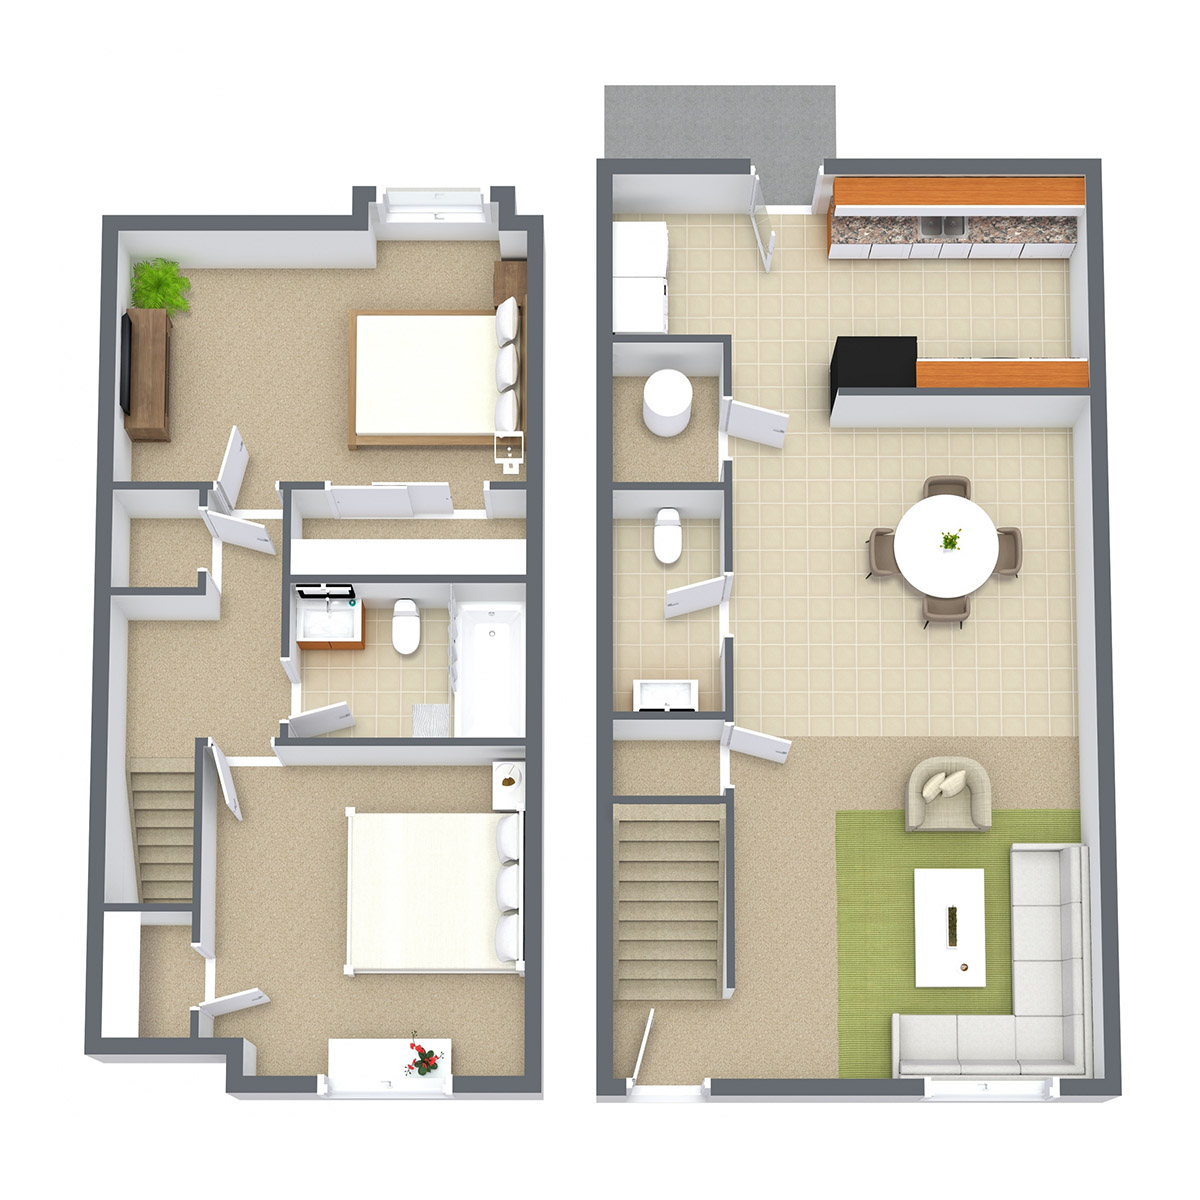 Prairie West - Floorplan - 2 Bedroom Townhome | Classic